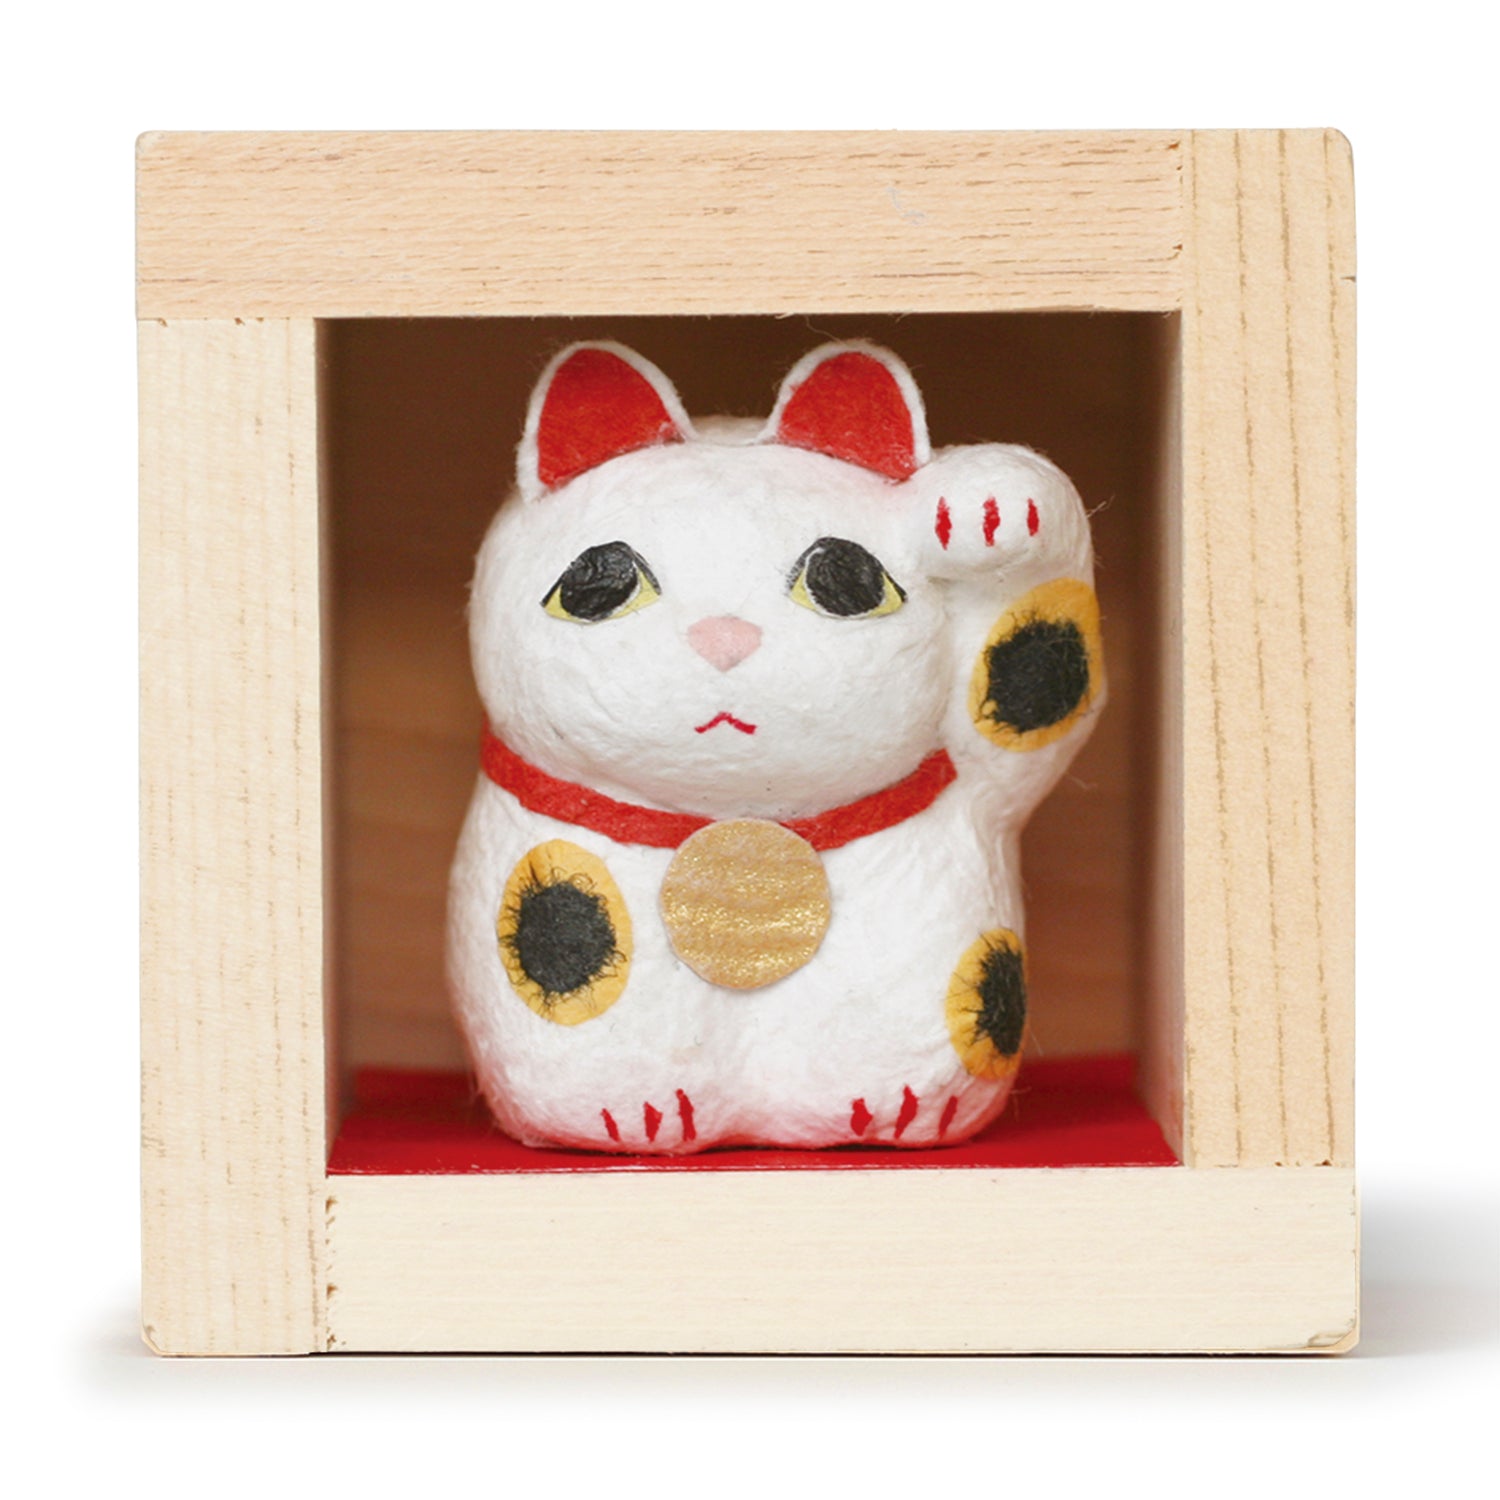 素敵でユニークな 招福 三福豆人形 猫 <br>めでたい柄がたくさん詰まった招き猫がにんまり ホッコリ福を招きます <br><br> 